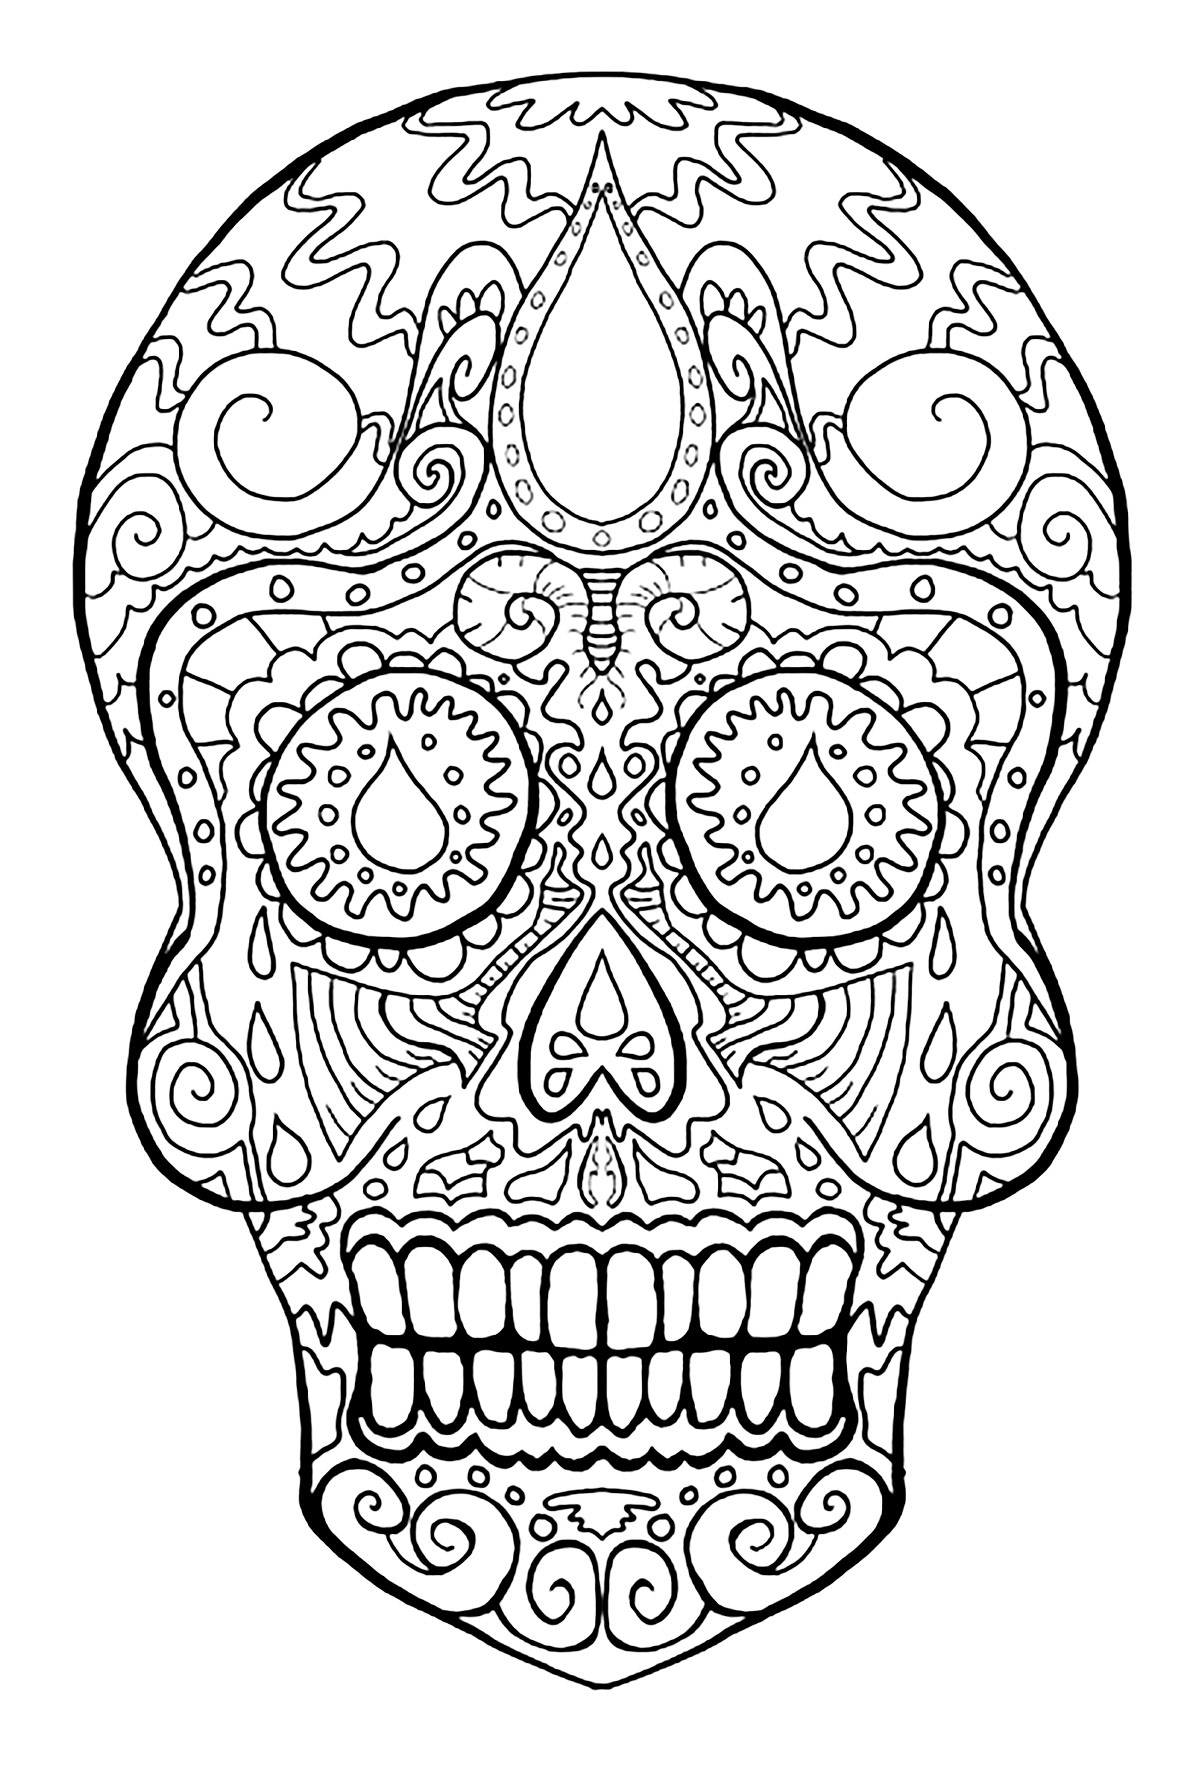 Caveira representativa do feriado mexicano 'Dia de los MuertosEsta página para colorir é inspirada no festival mexicano Dias de los Muertos. Representa uma caveira, símbolo essencial desta festa.
É composta por motivos que reflectem a alegria e a jovialidade desta festa